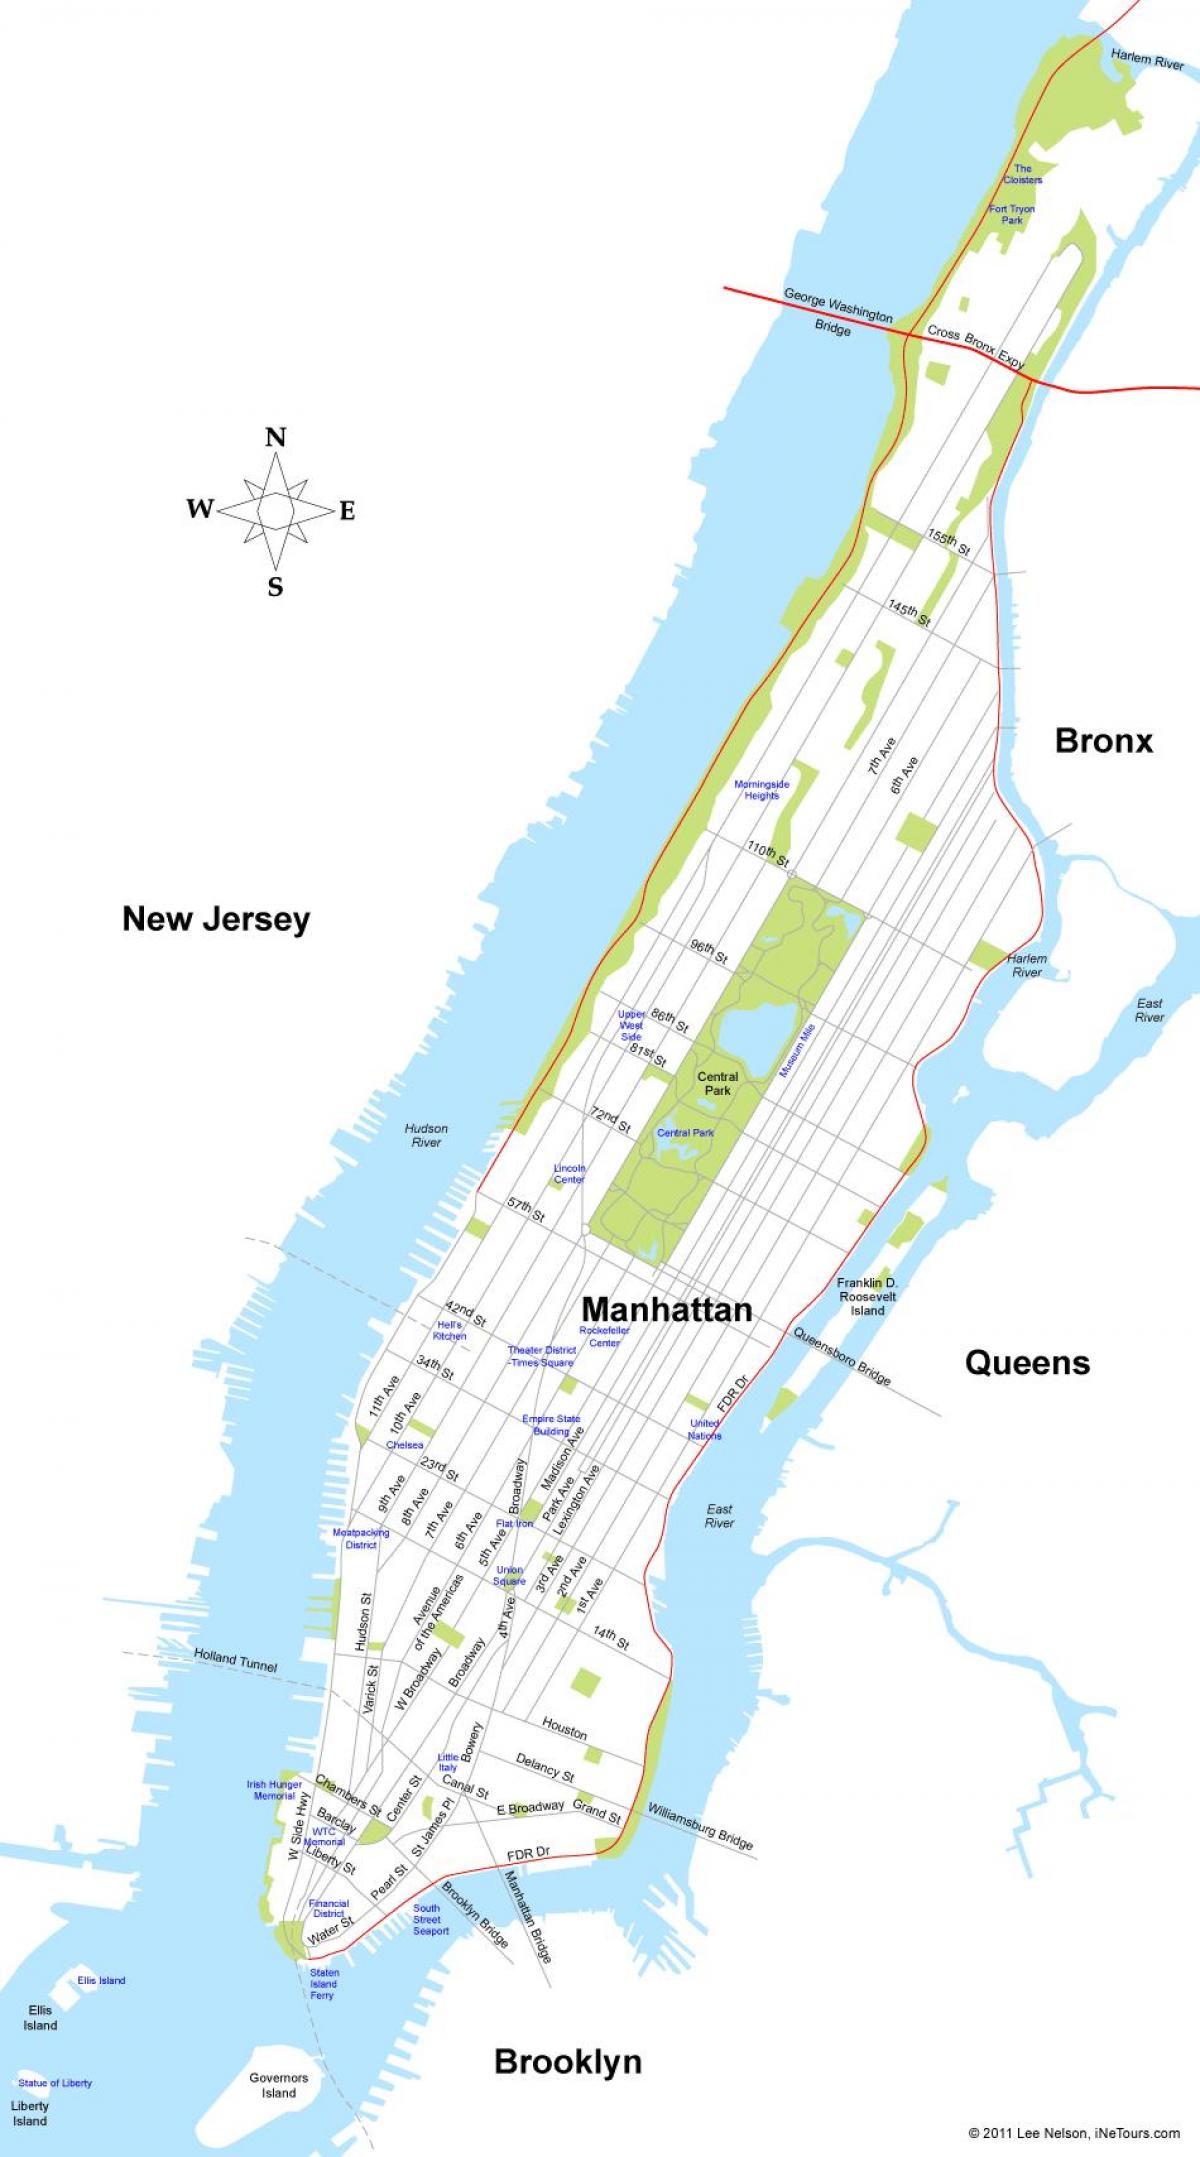 नक्शा मैनहट्टन के द्वीप न्यूयॉर्क